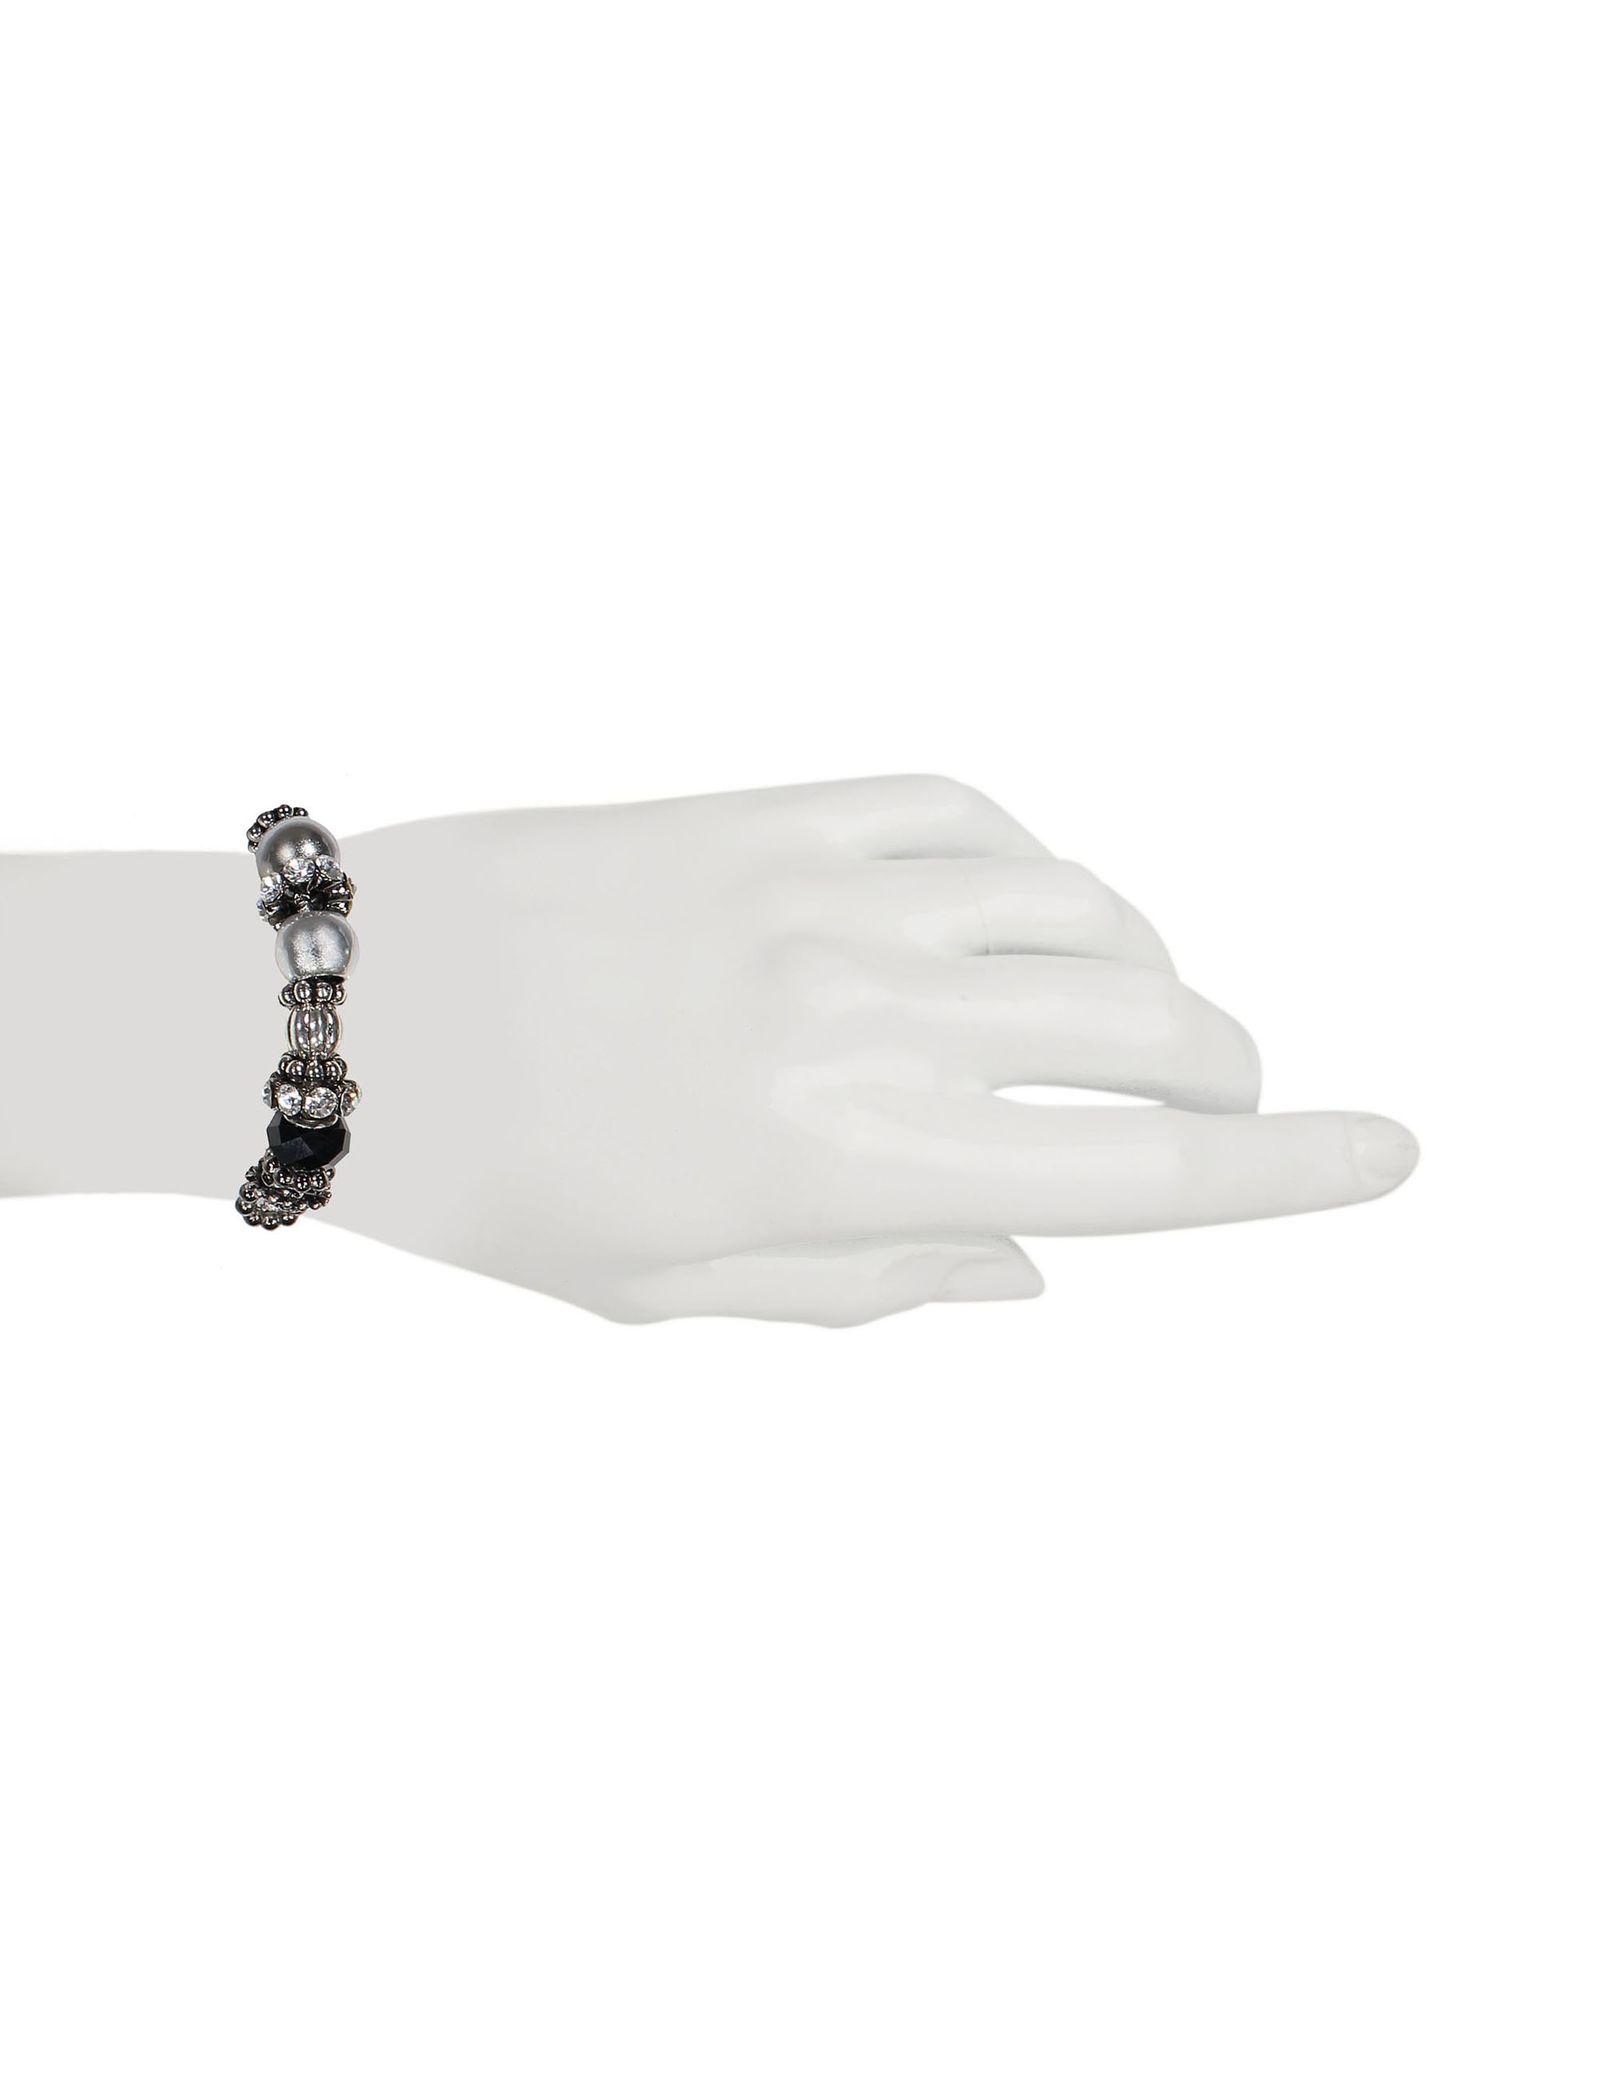 دستبند زنانه - پونت روما - نقره اي - 6